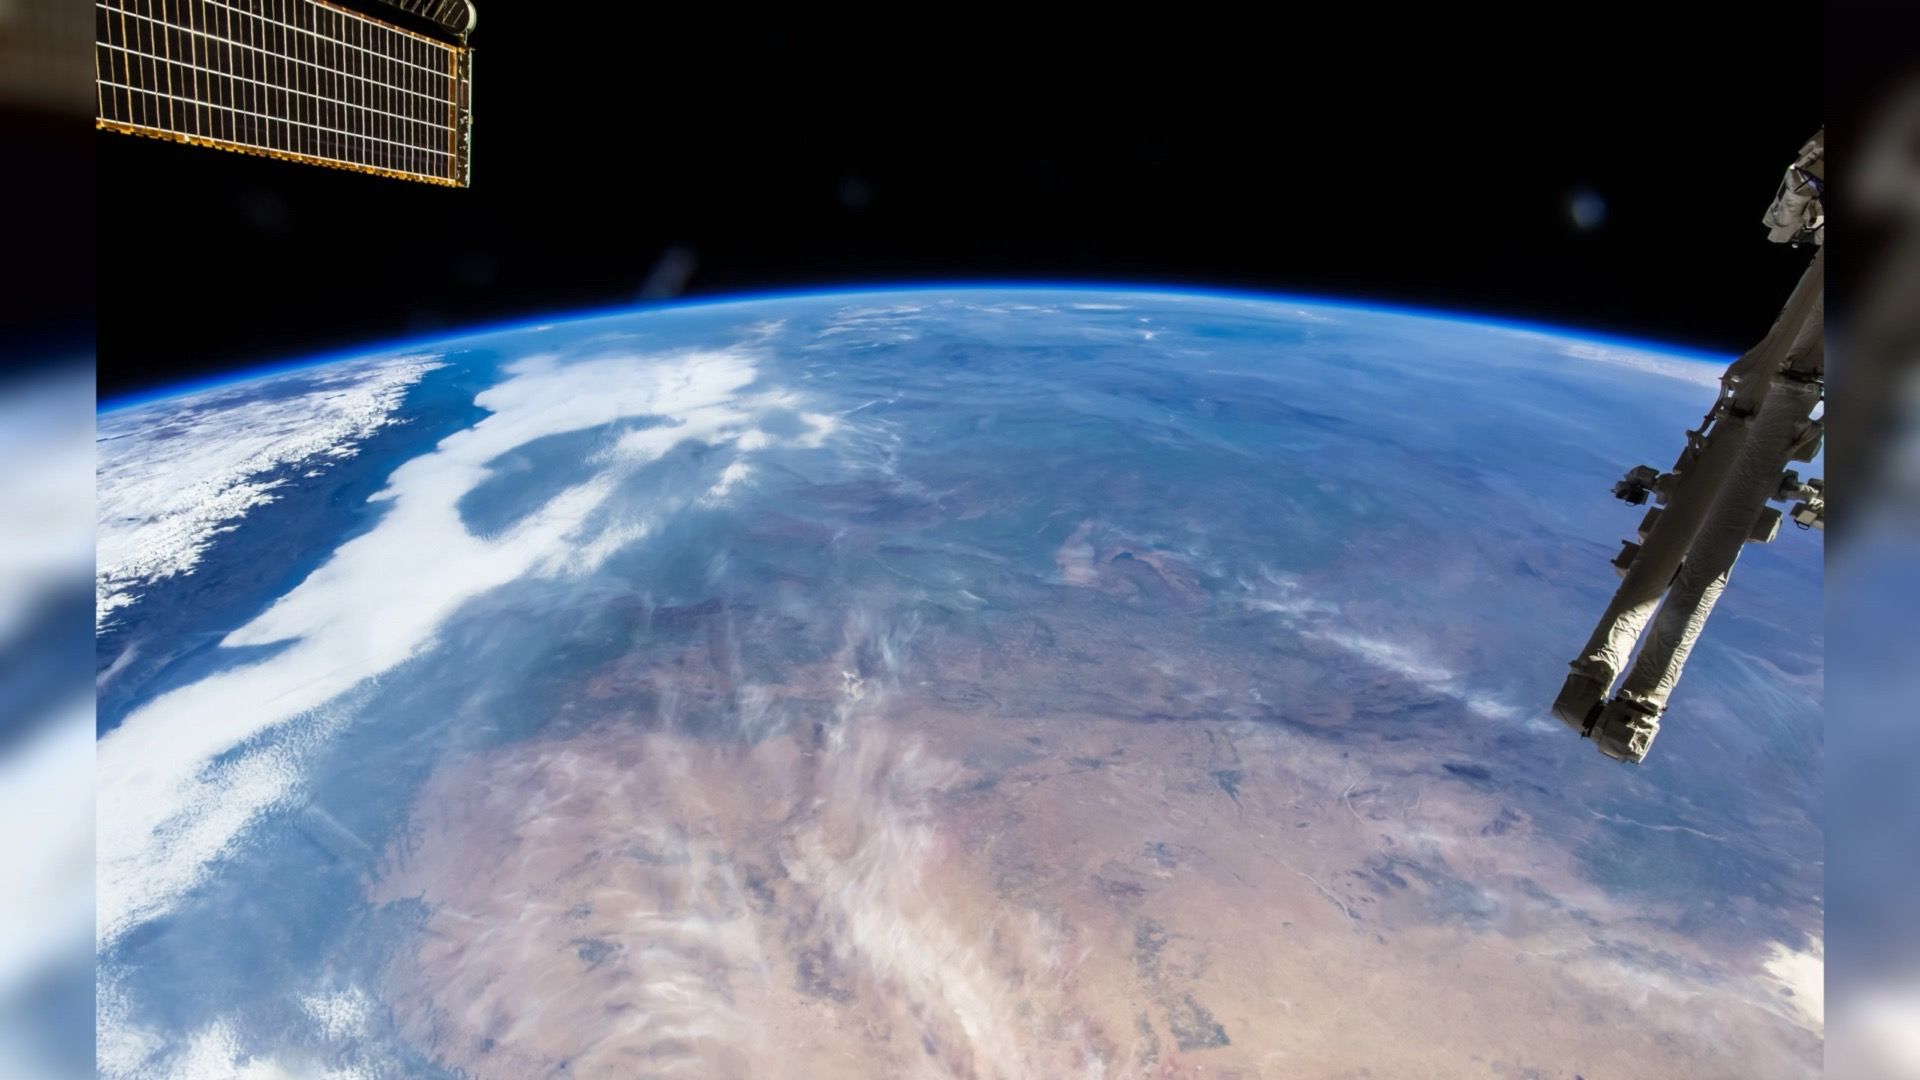 壁纸桌面应用,包含了细致的基于iss国际太空站拍摄的地球画面制作的3d